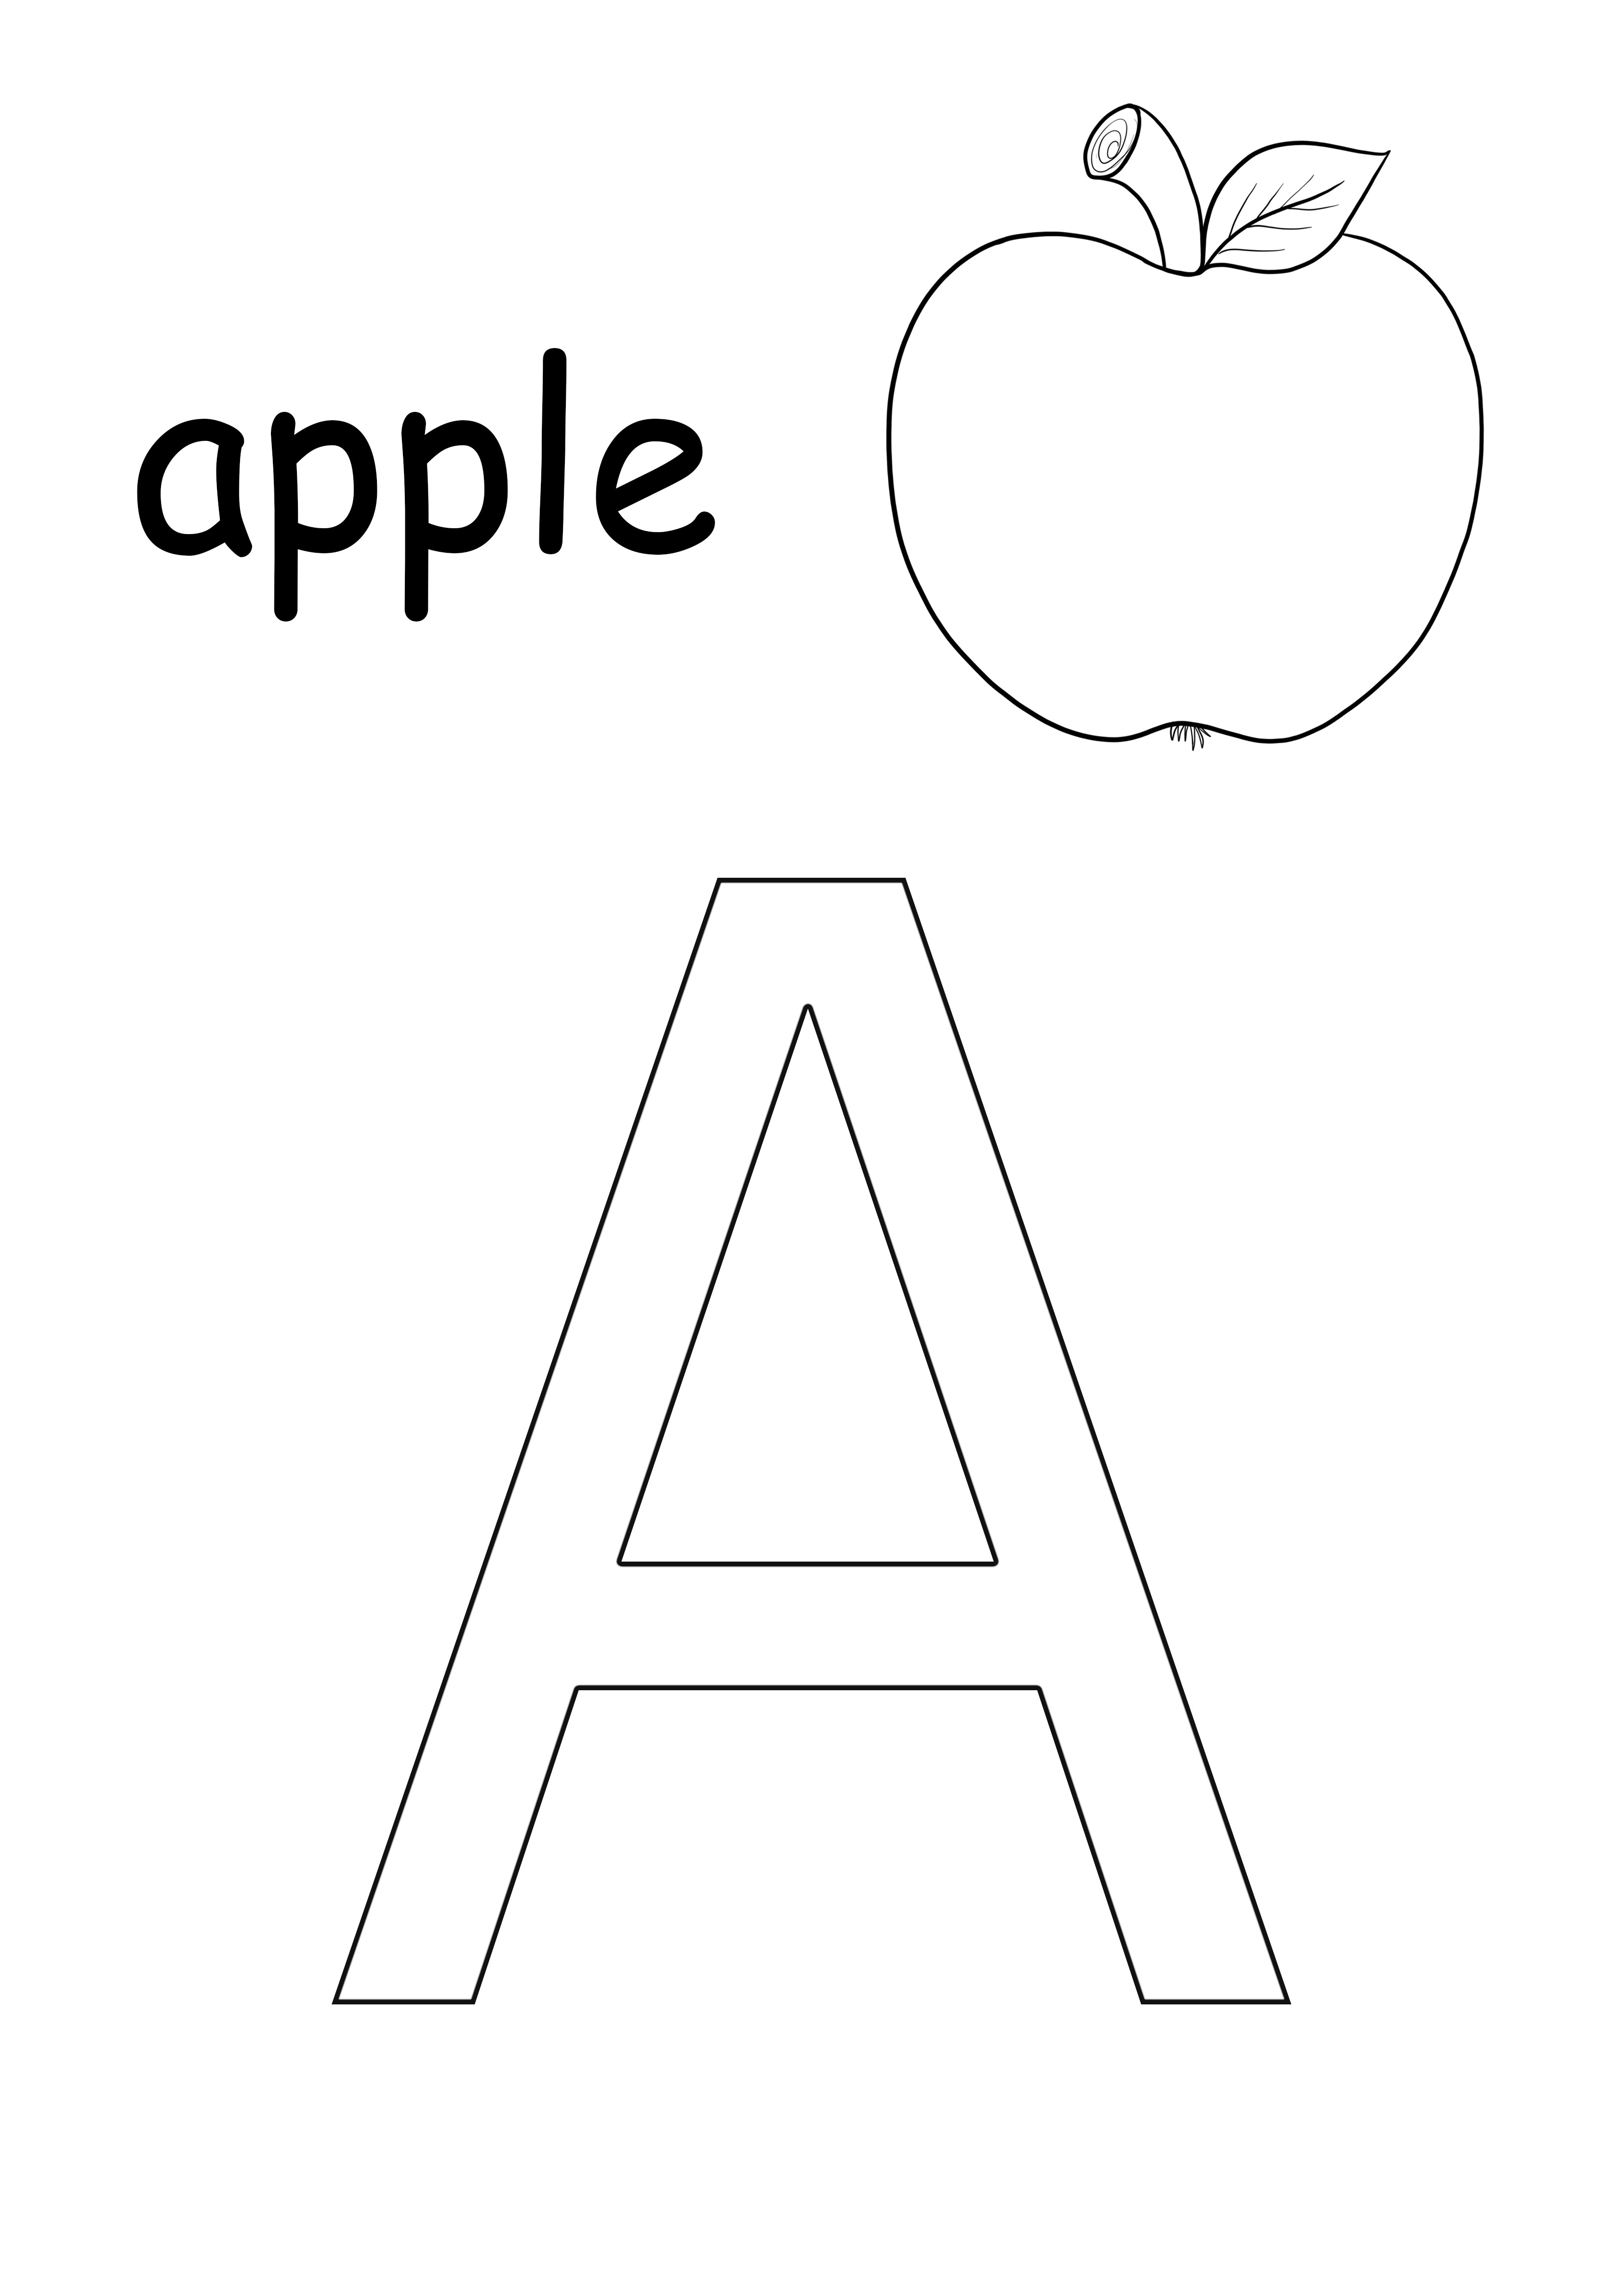 A-kirjain-omena-hedelmä-pienet sana-ilmainen tulostettava arkki